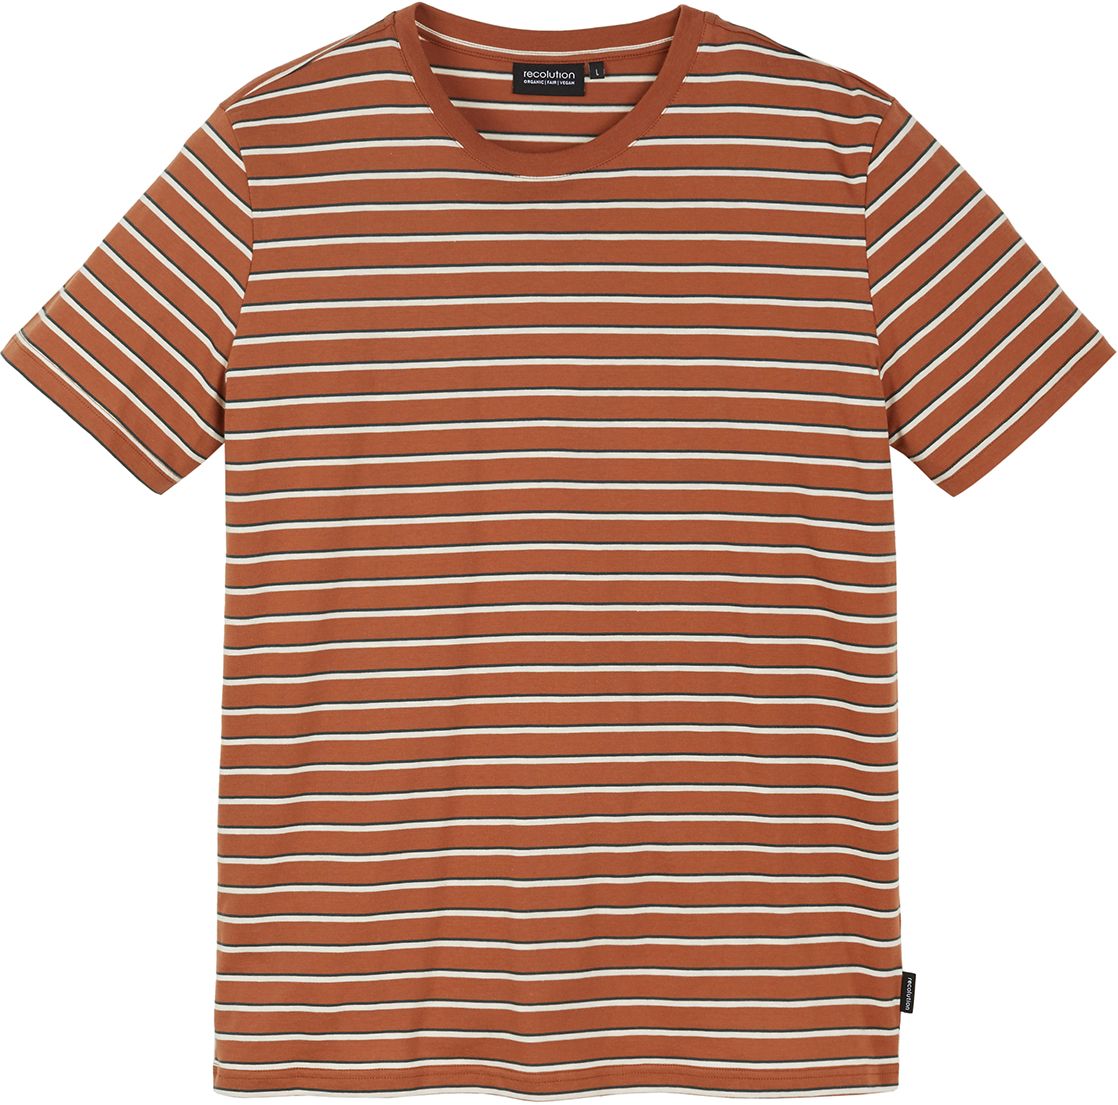 Herren-Shirt CACAO dark orange / offwhite / green forest